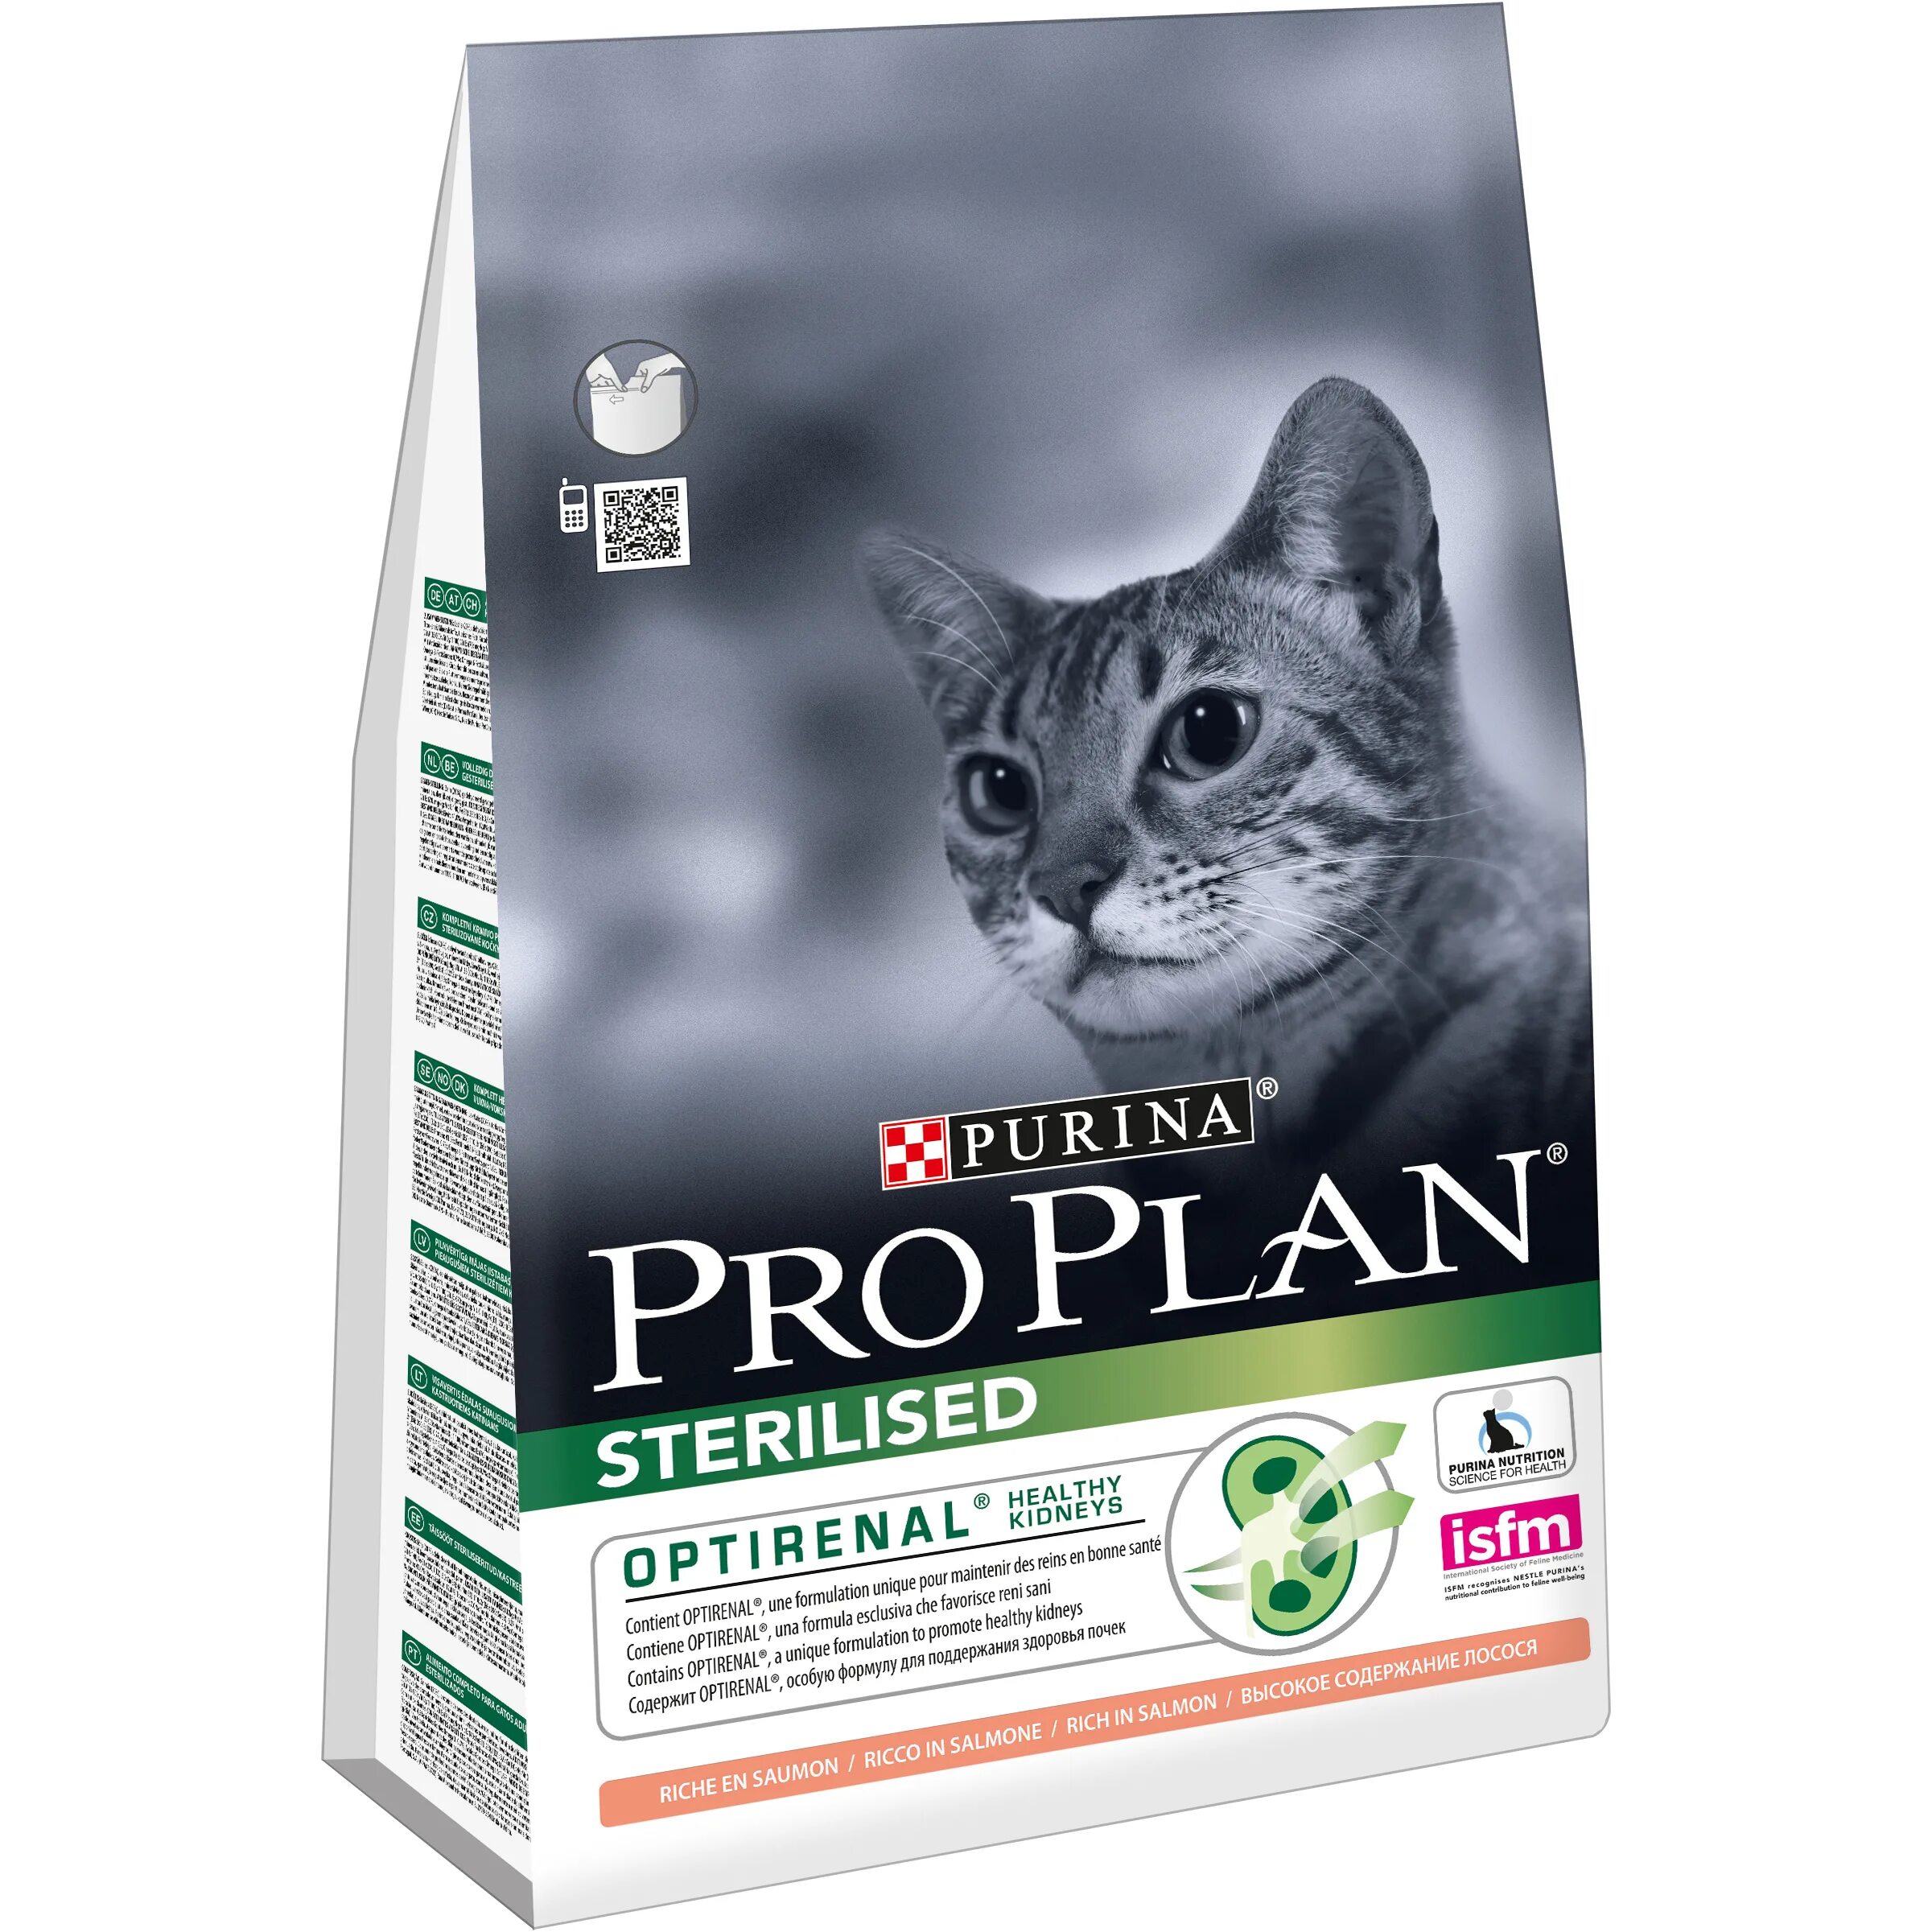 Пурина Проплан для стерилизованных кошек. Purina Pro Plan delicate для кошек. Purina Pro Plan Sterilised 7+. Пурина Проплан для стерилизованных кошек сухой. Pro plan elements для кошек